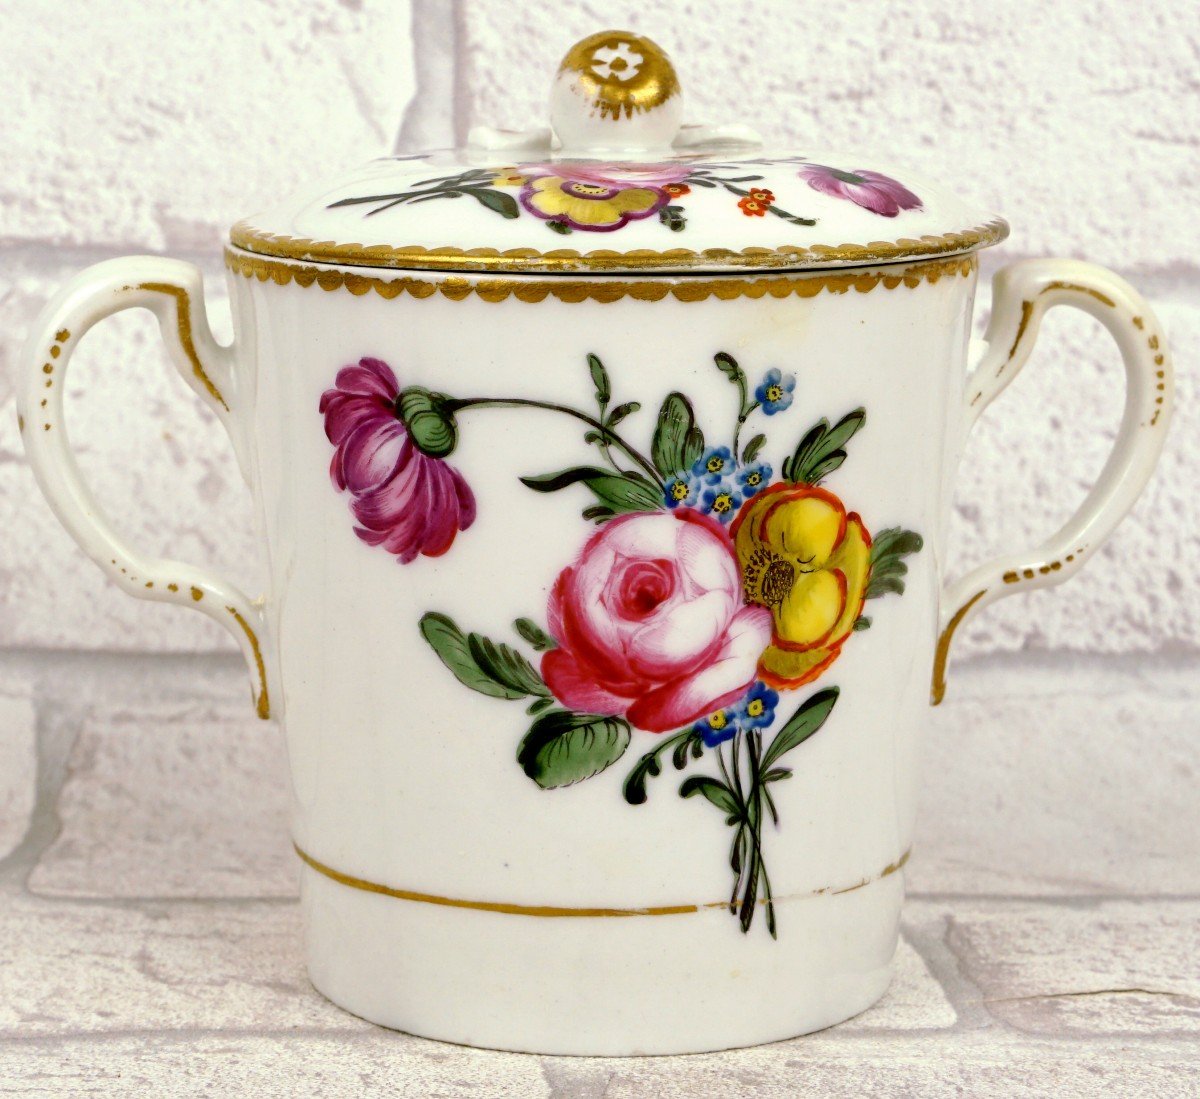 Trembleuse Cup With 2 Handles In Limoges Porcelain - Manufacture Du Comte d'Artois - Ep. XVIII-photo-3